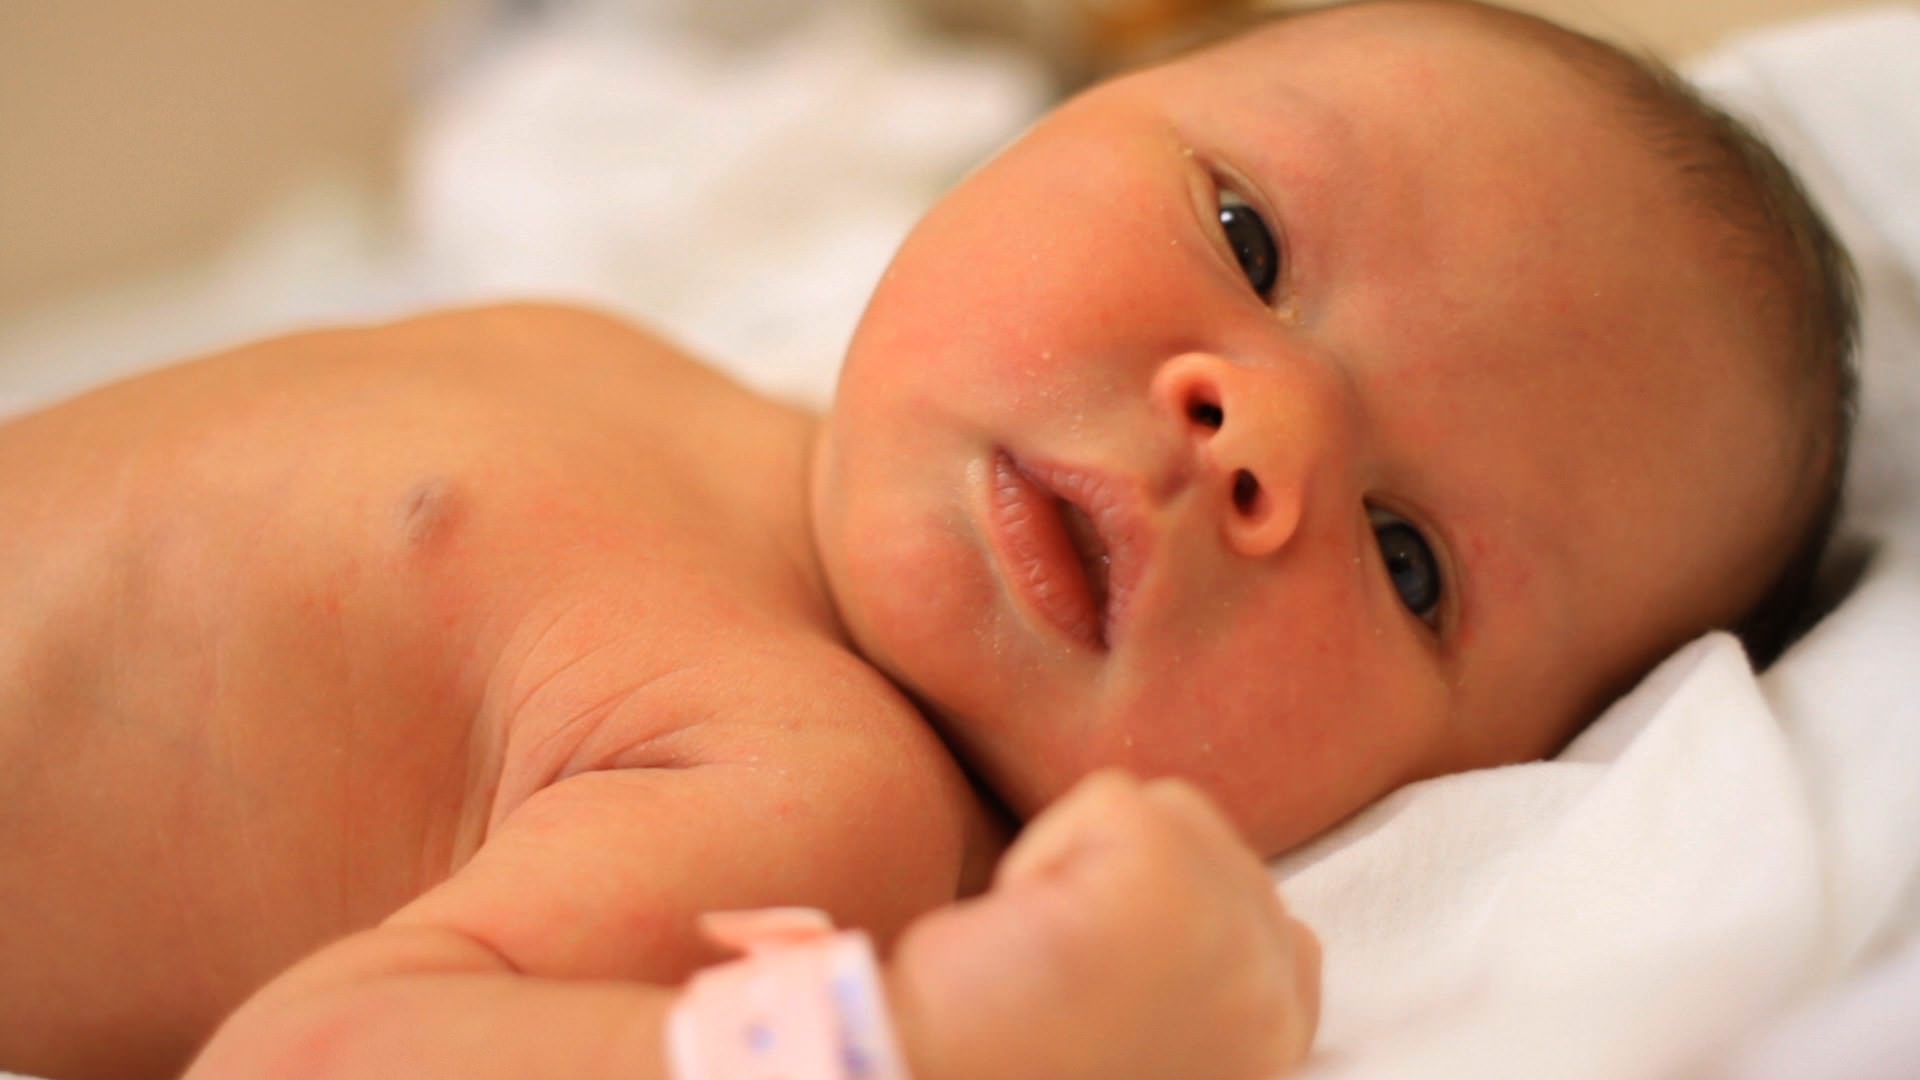 Желтушка у новорожденных отзывы. Желтушка у новорожденных фото. Кожа новорожденного с желтушкой. Цвет кожи новорожденного ребенка. Новорождённый ребёнок с желтушкой.